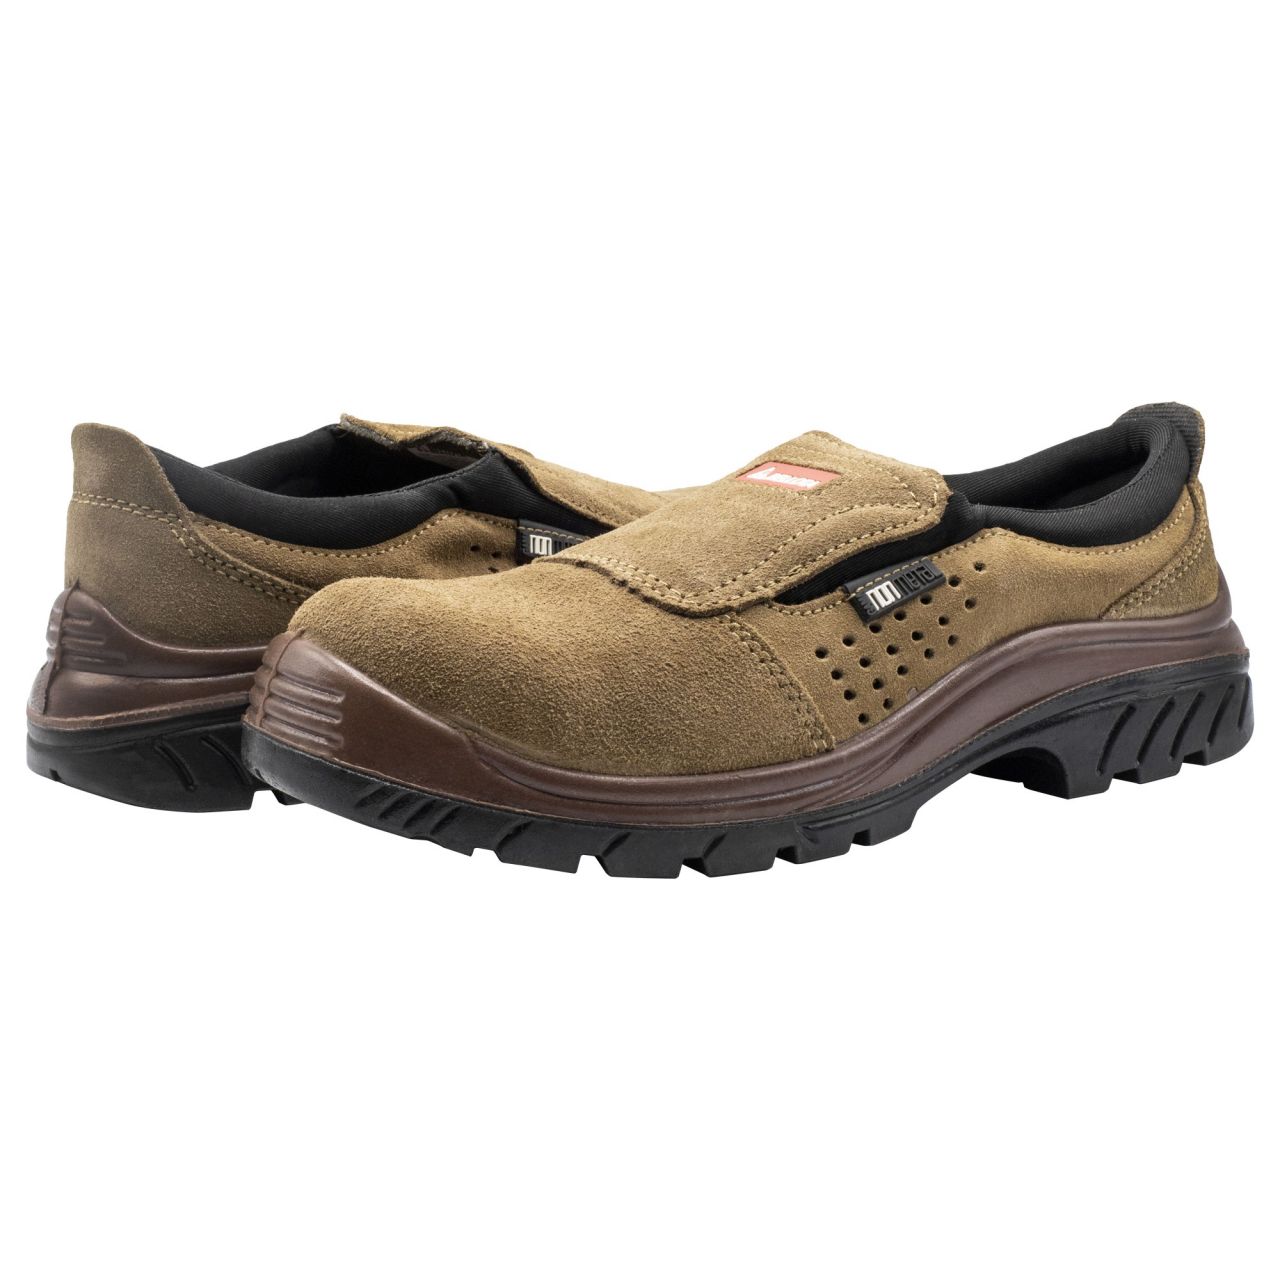 Zapato de seguridad Nonmetal Easy serraje marrón S1P talla 39 / 7222739S1P